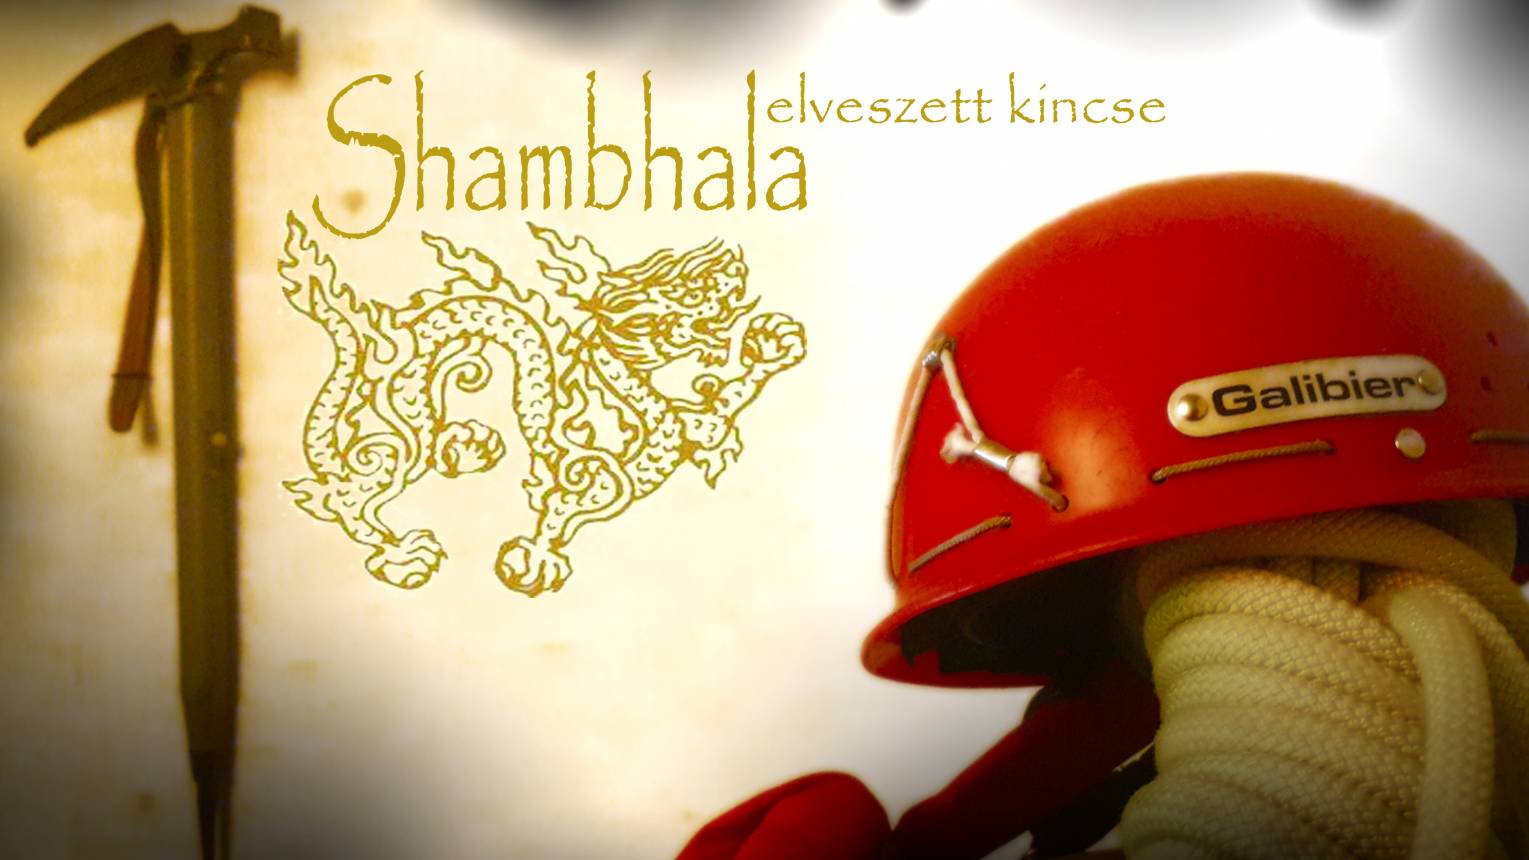 Shambhala legendája szabadulószoba Tatabányán